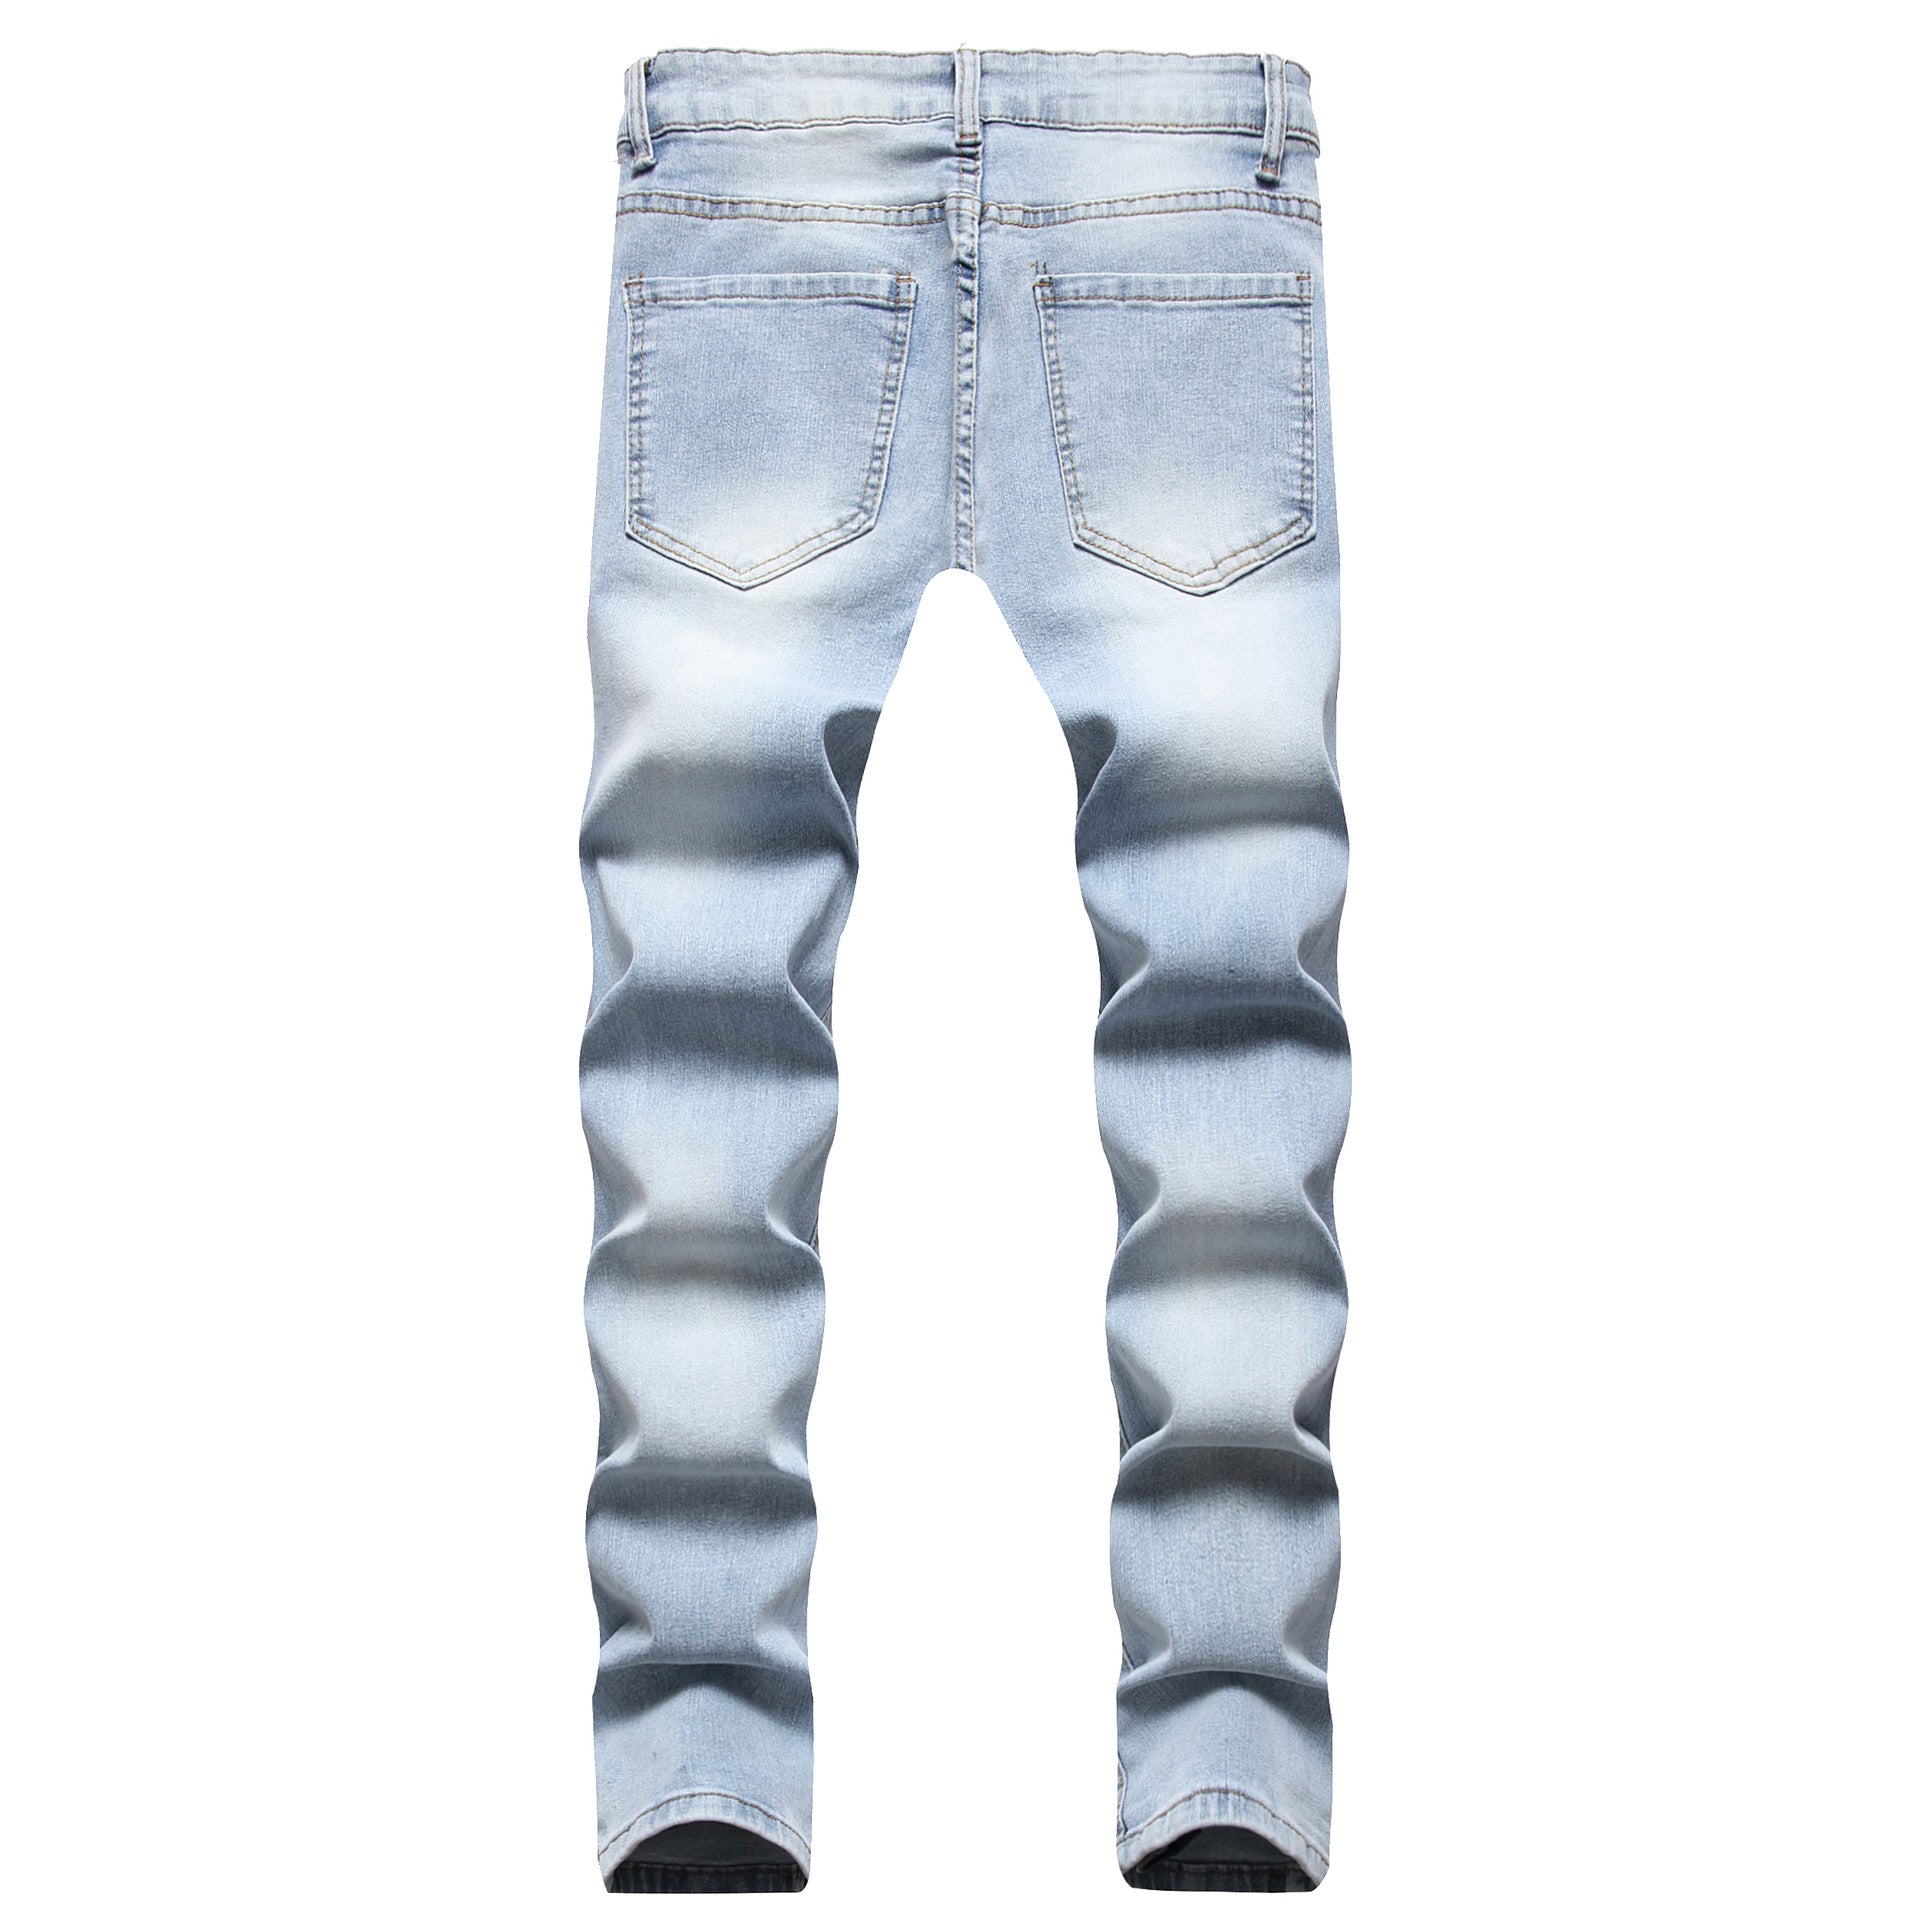 Hype Jeans Company - Men's slim Denim Jean - 804